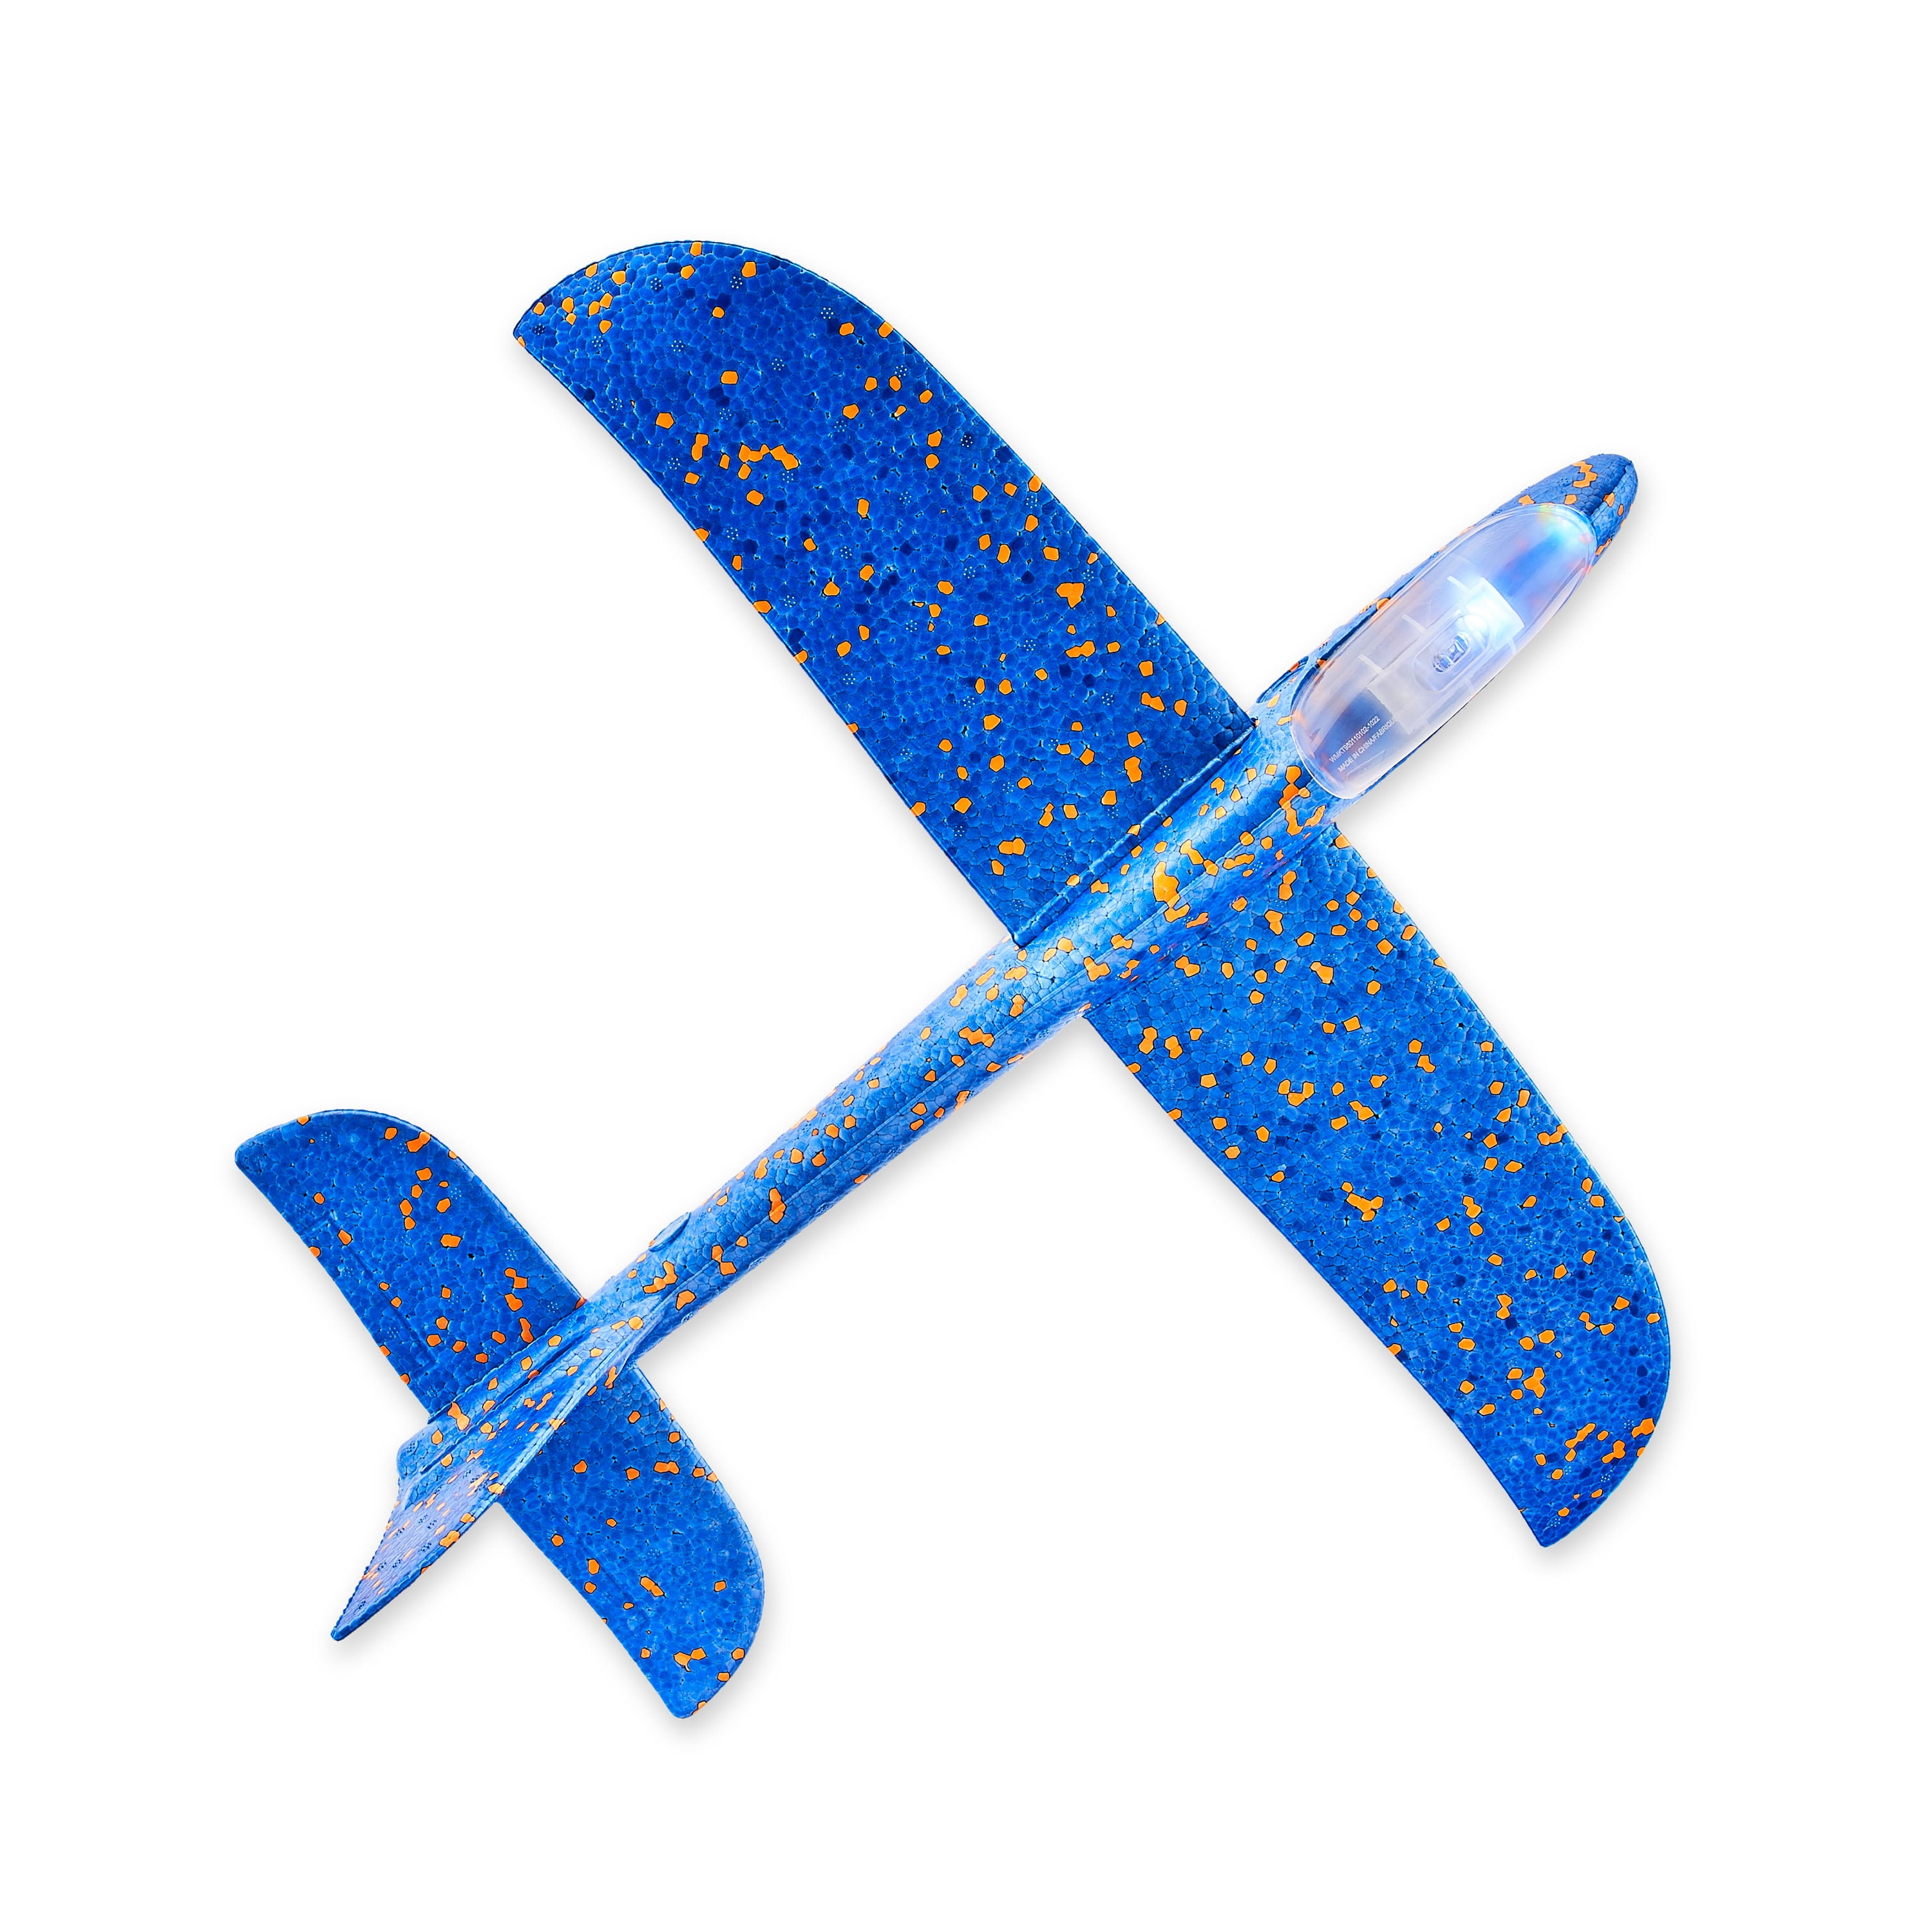 WayToCelebrate Easter Blue Light Up Glider Plane